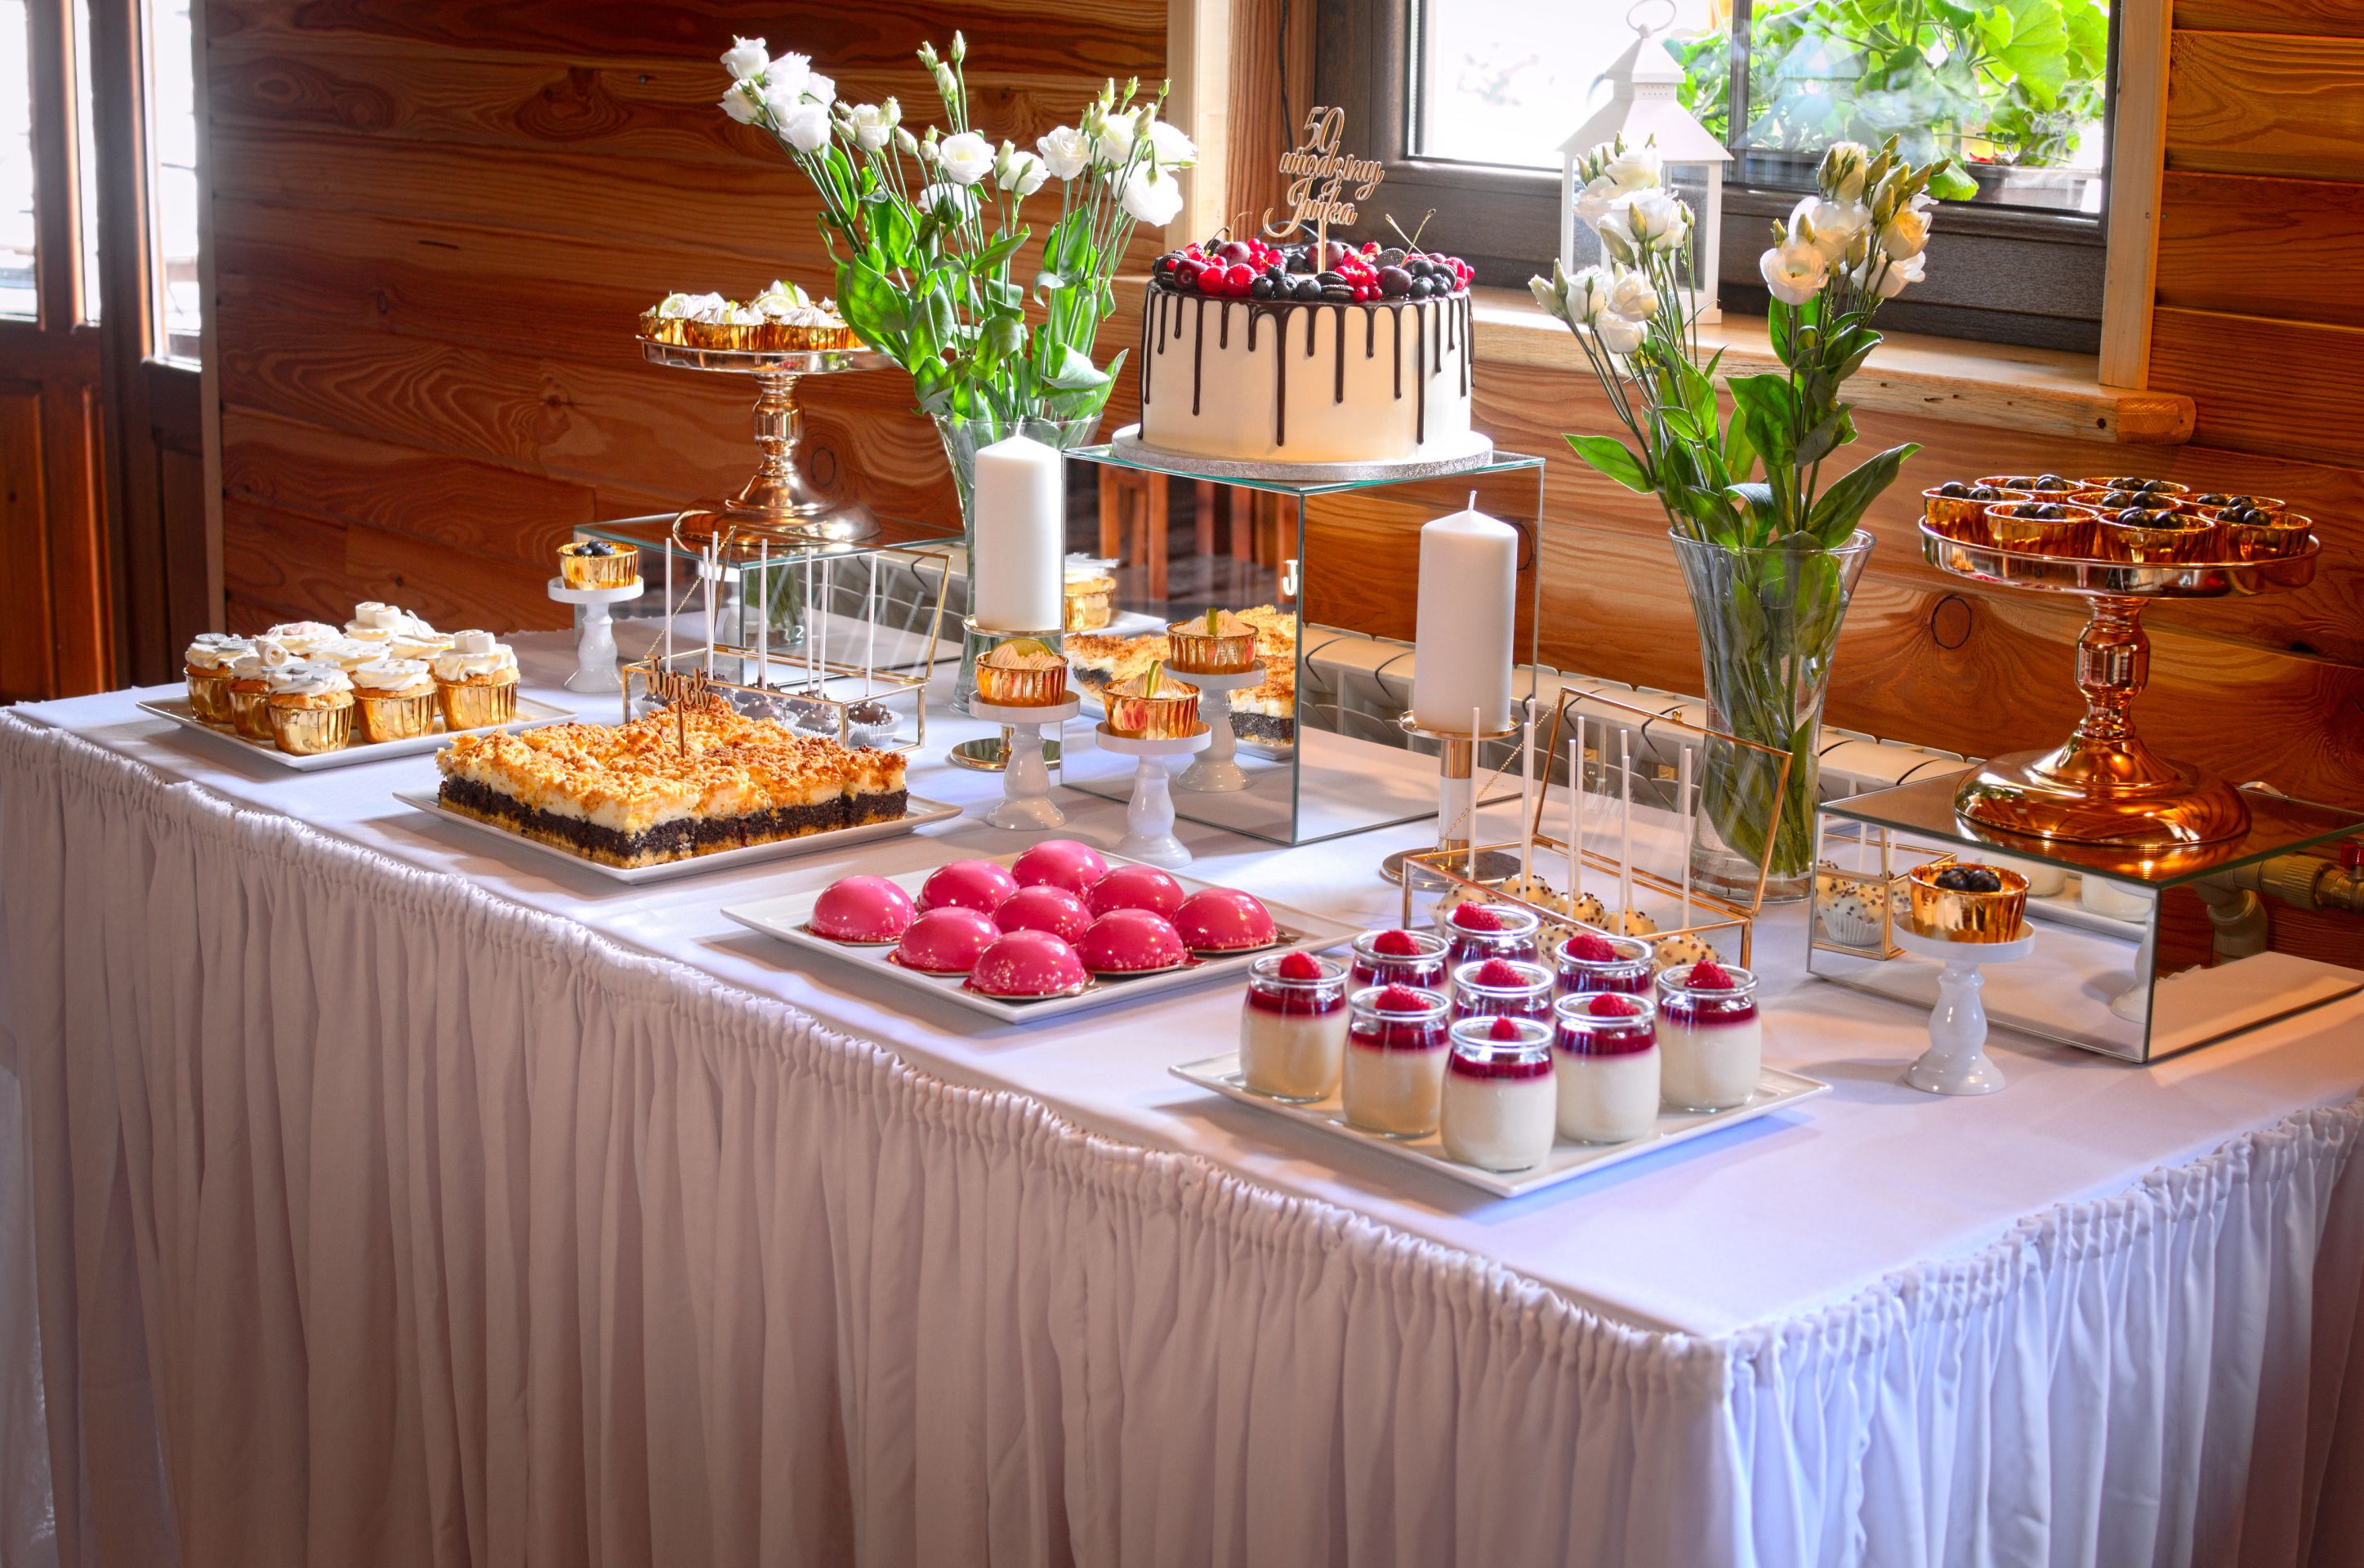 Słodki stół przygotowany na 50-te urodziny Jurka